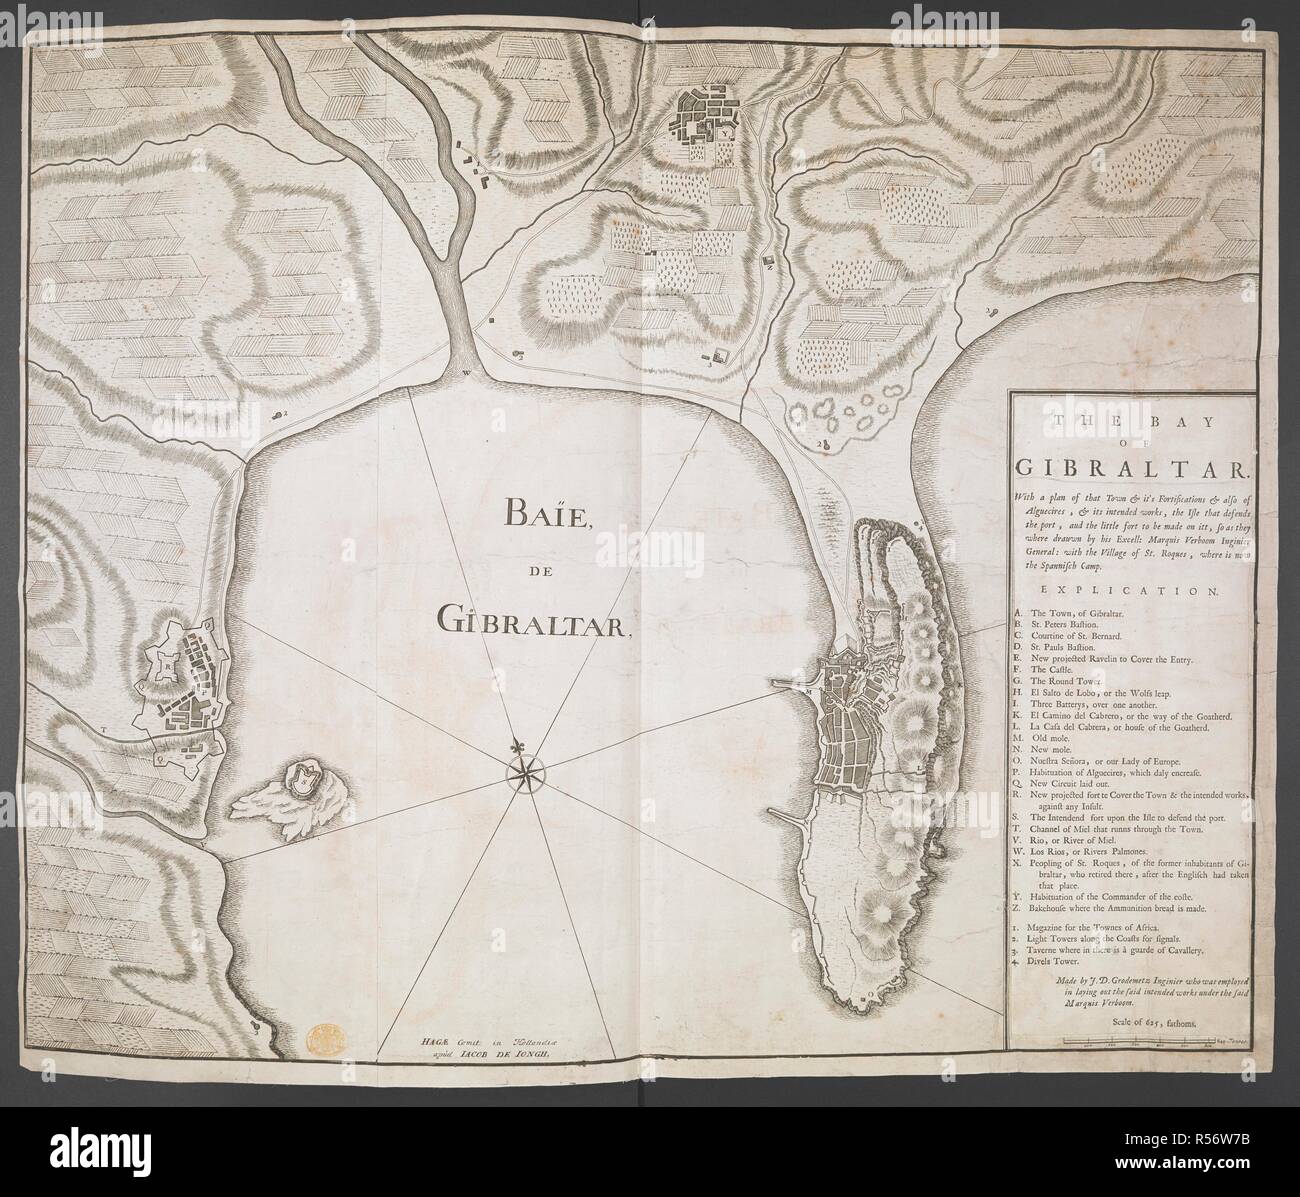 Eine Karte der Bucht von Gibraltar. Baie de Gibraltar. Carte de la Baye de Gibraltar. 1715?. Quelle: Karten K. Top. 72.20. Sprache: Französisch und Englisch. Stockfoto